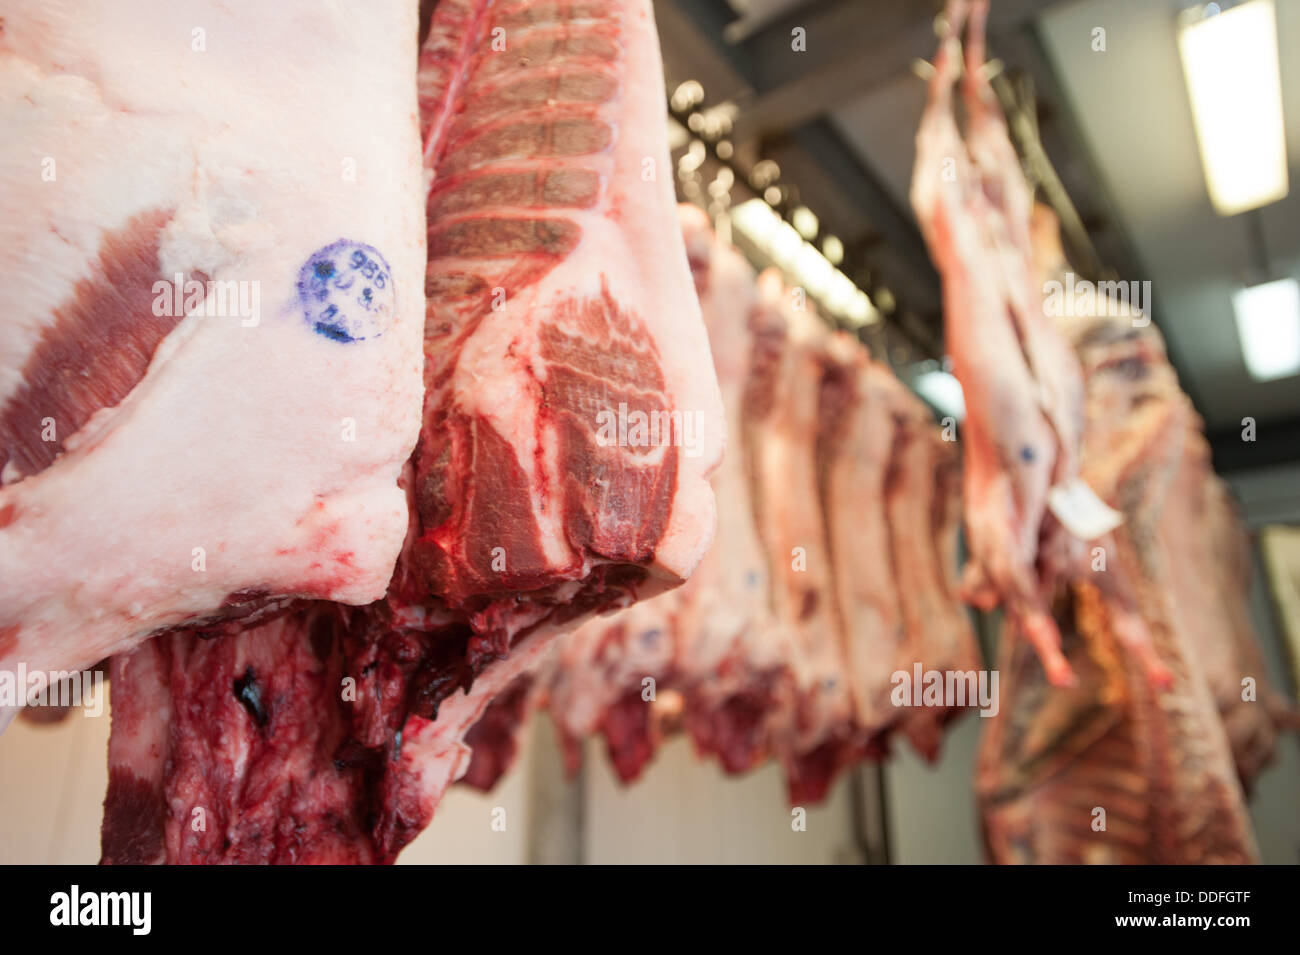 Schweinehälften in Fleisch-Spind Stockfoto